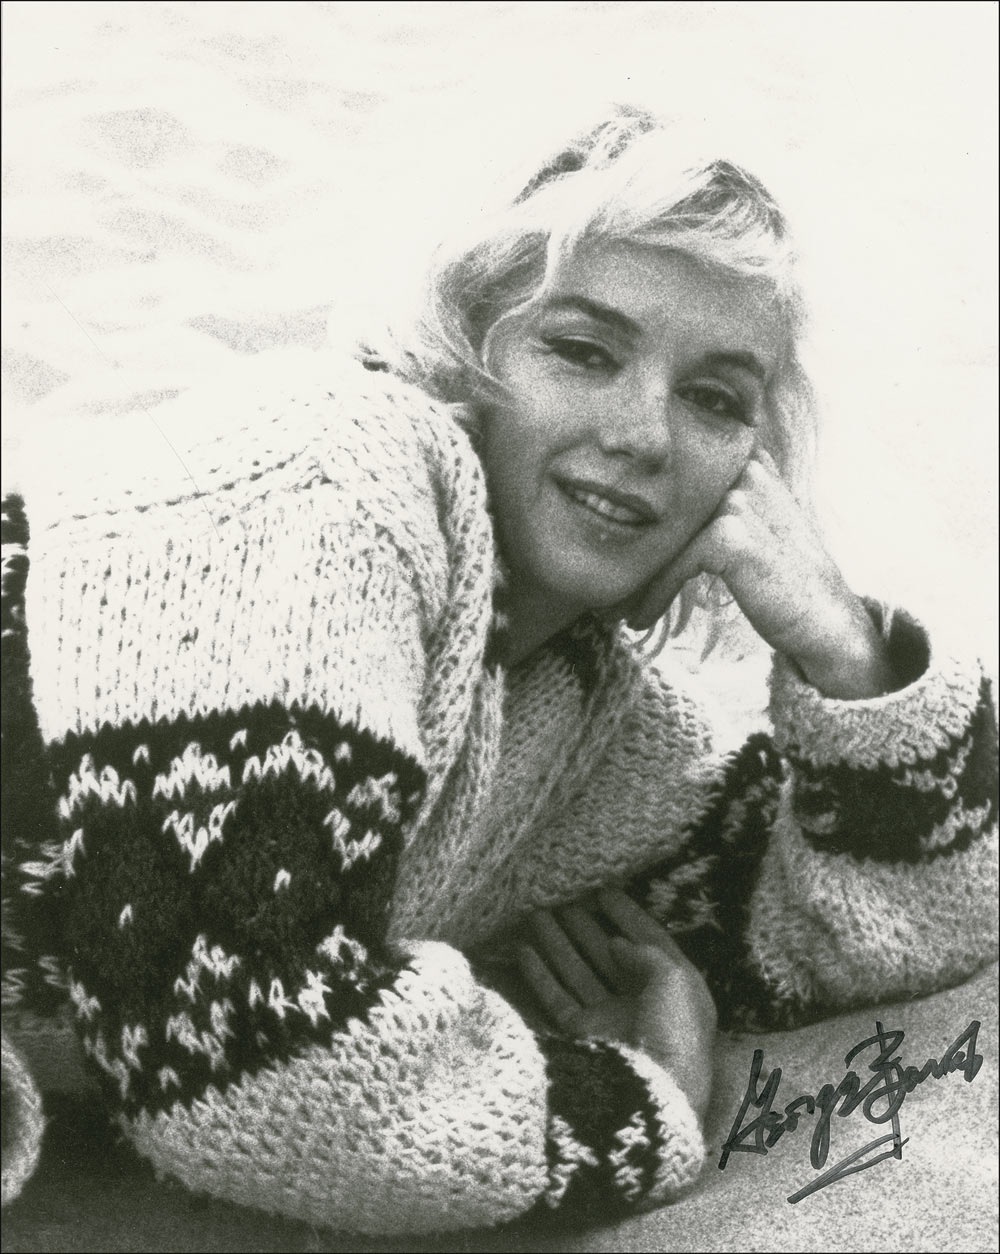 Lot #1077 Marilyn Monroe: George Barris